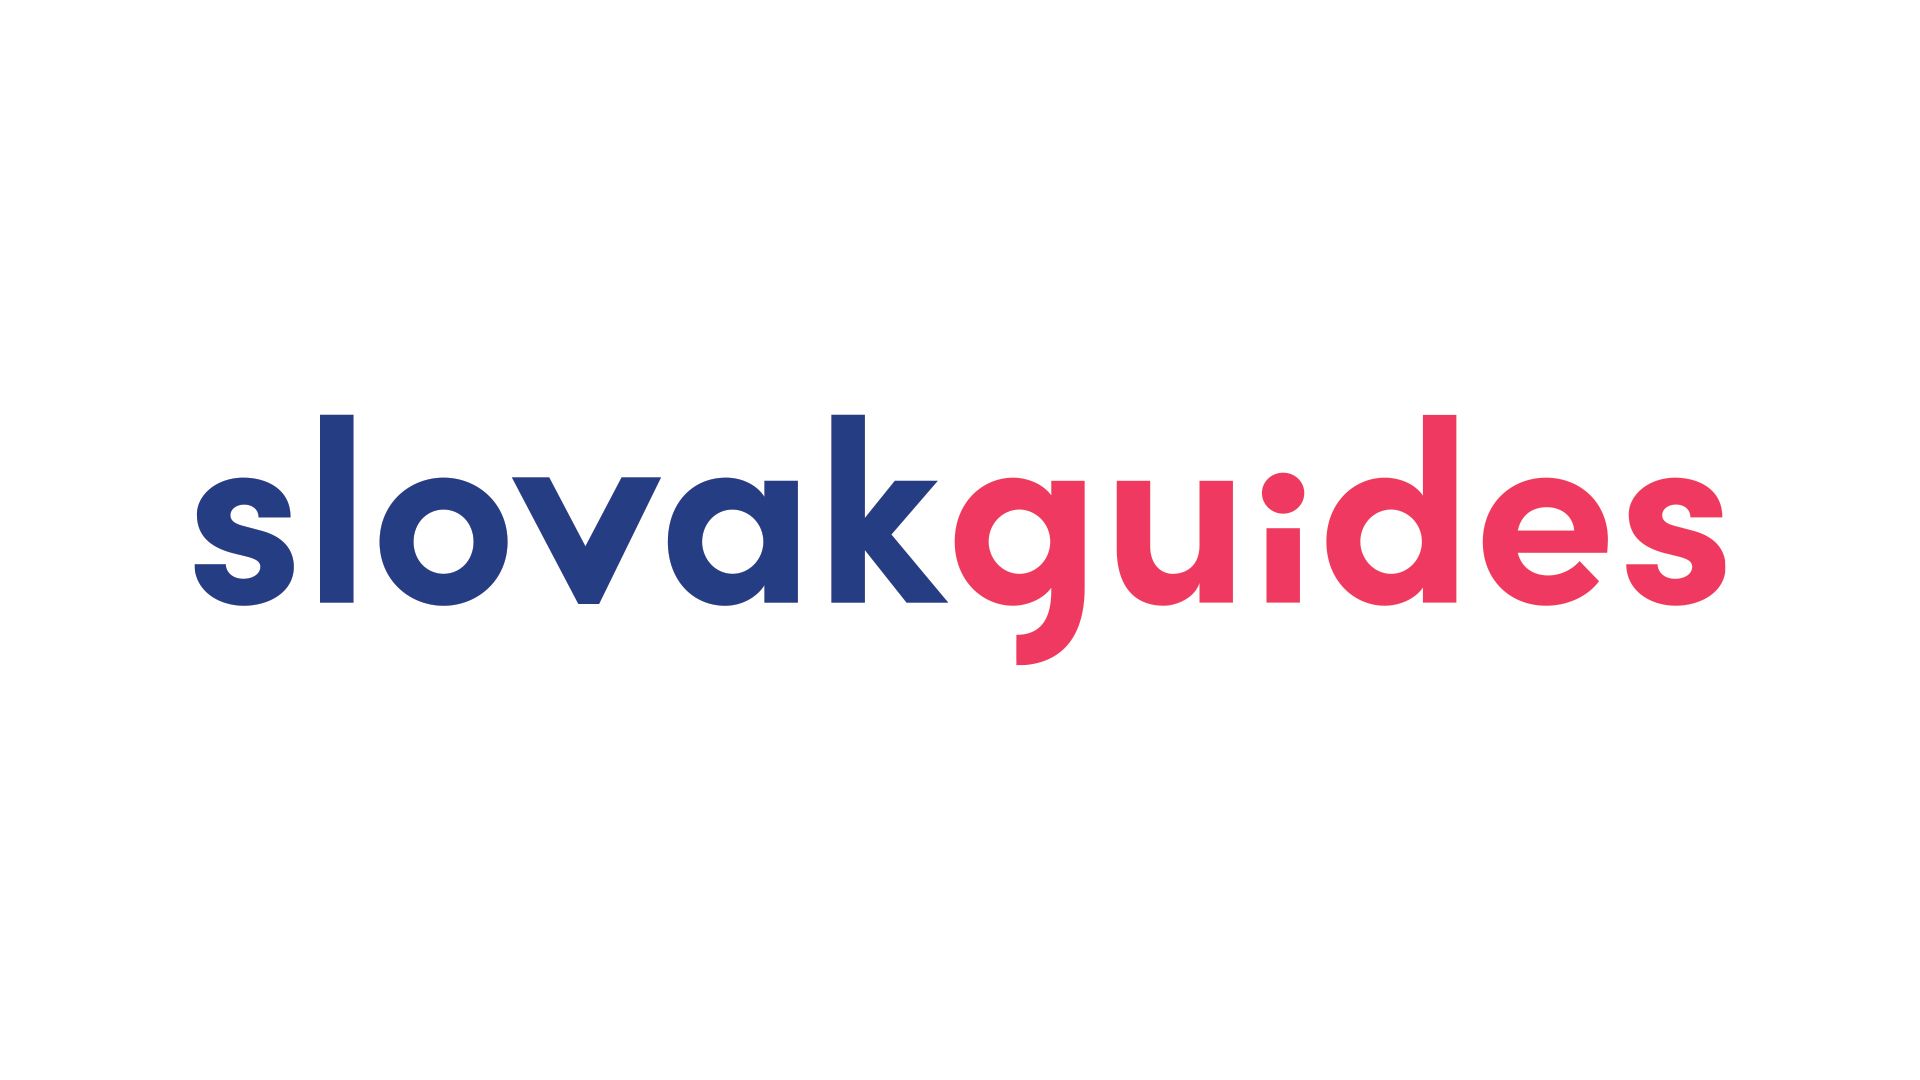 slovak guides logo